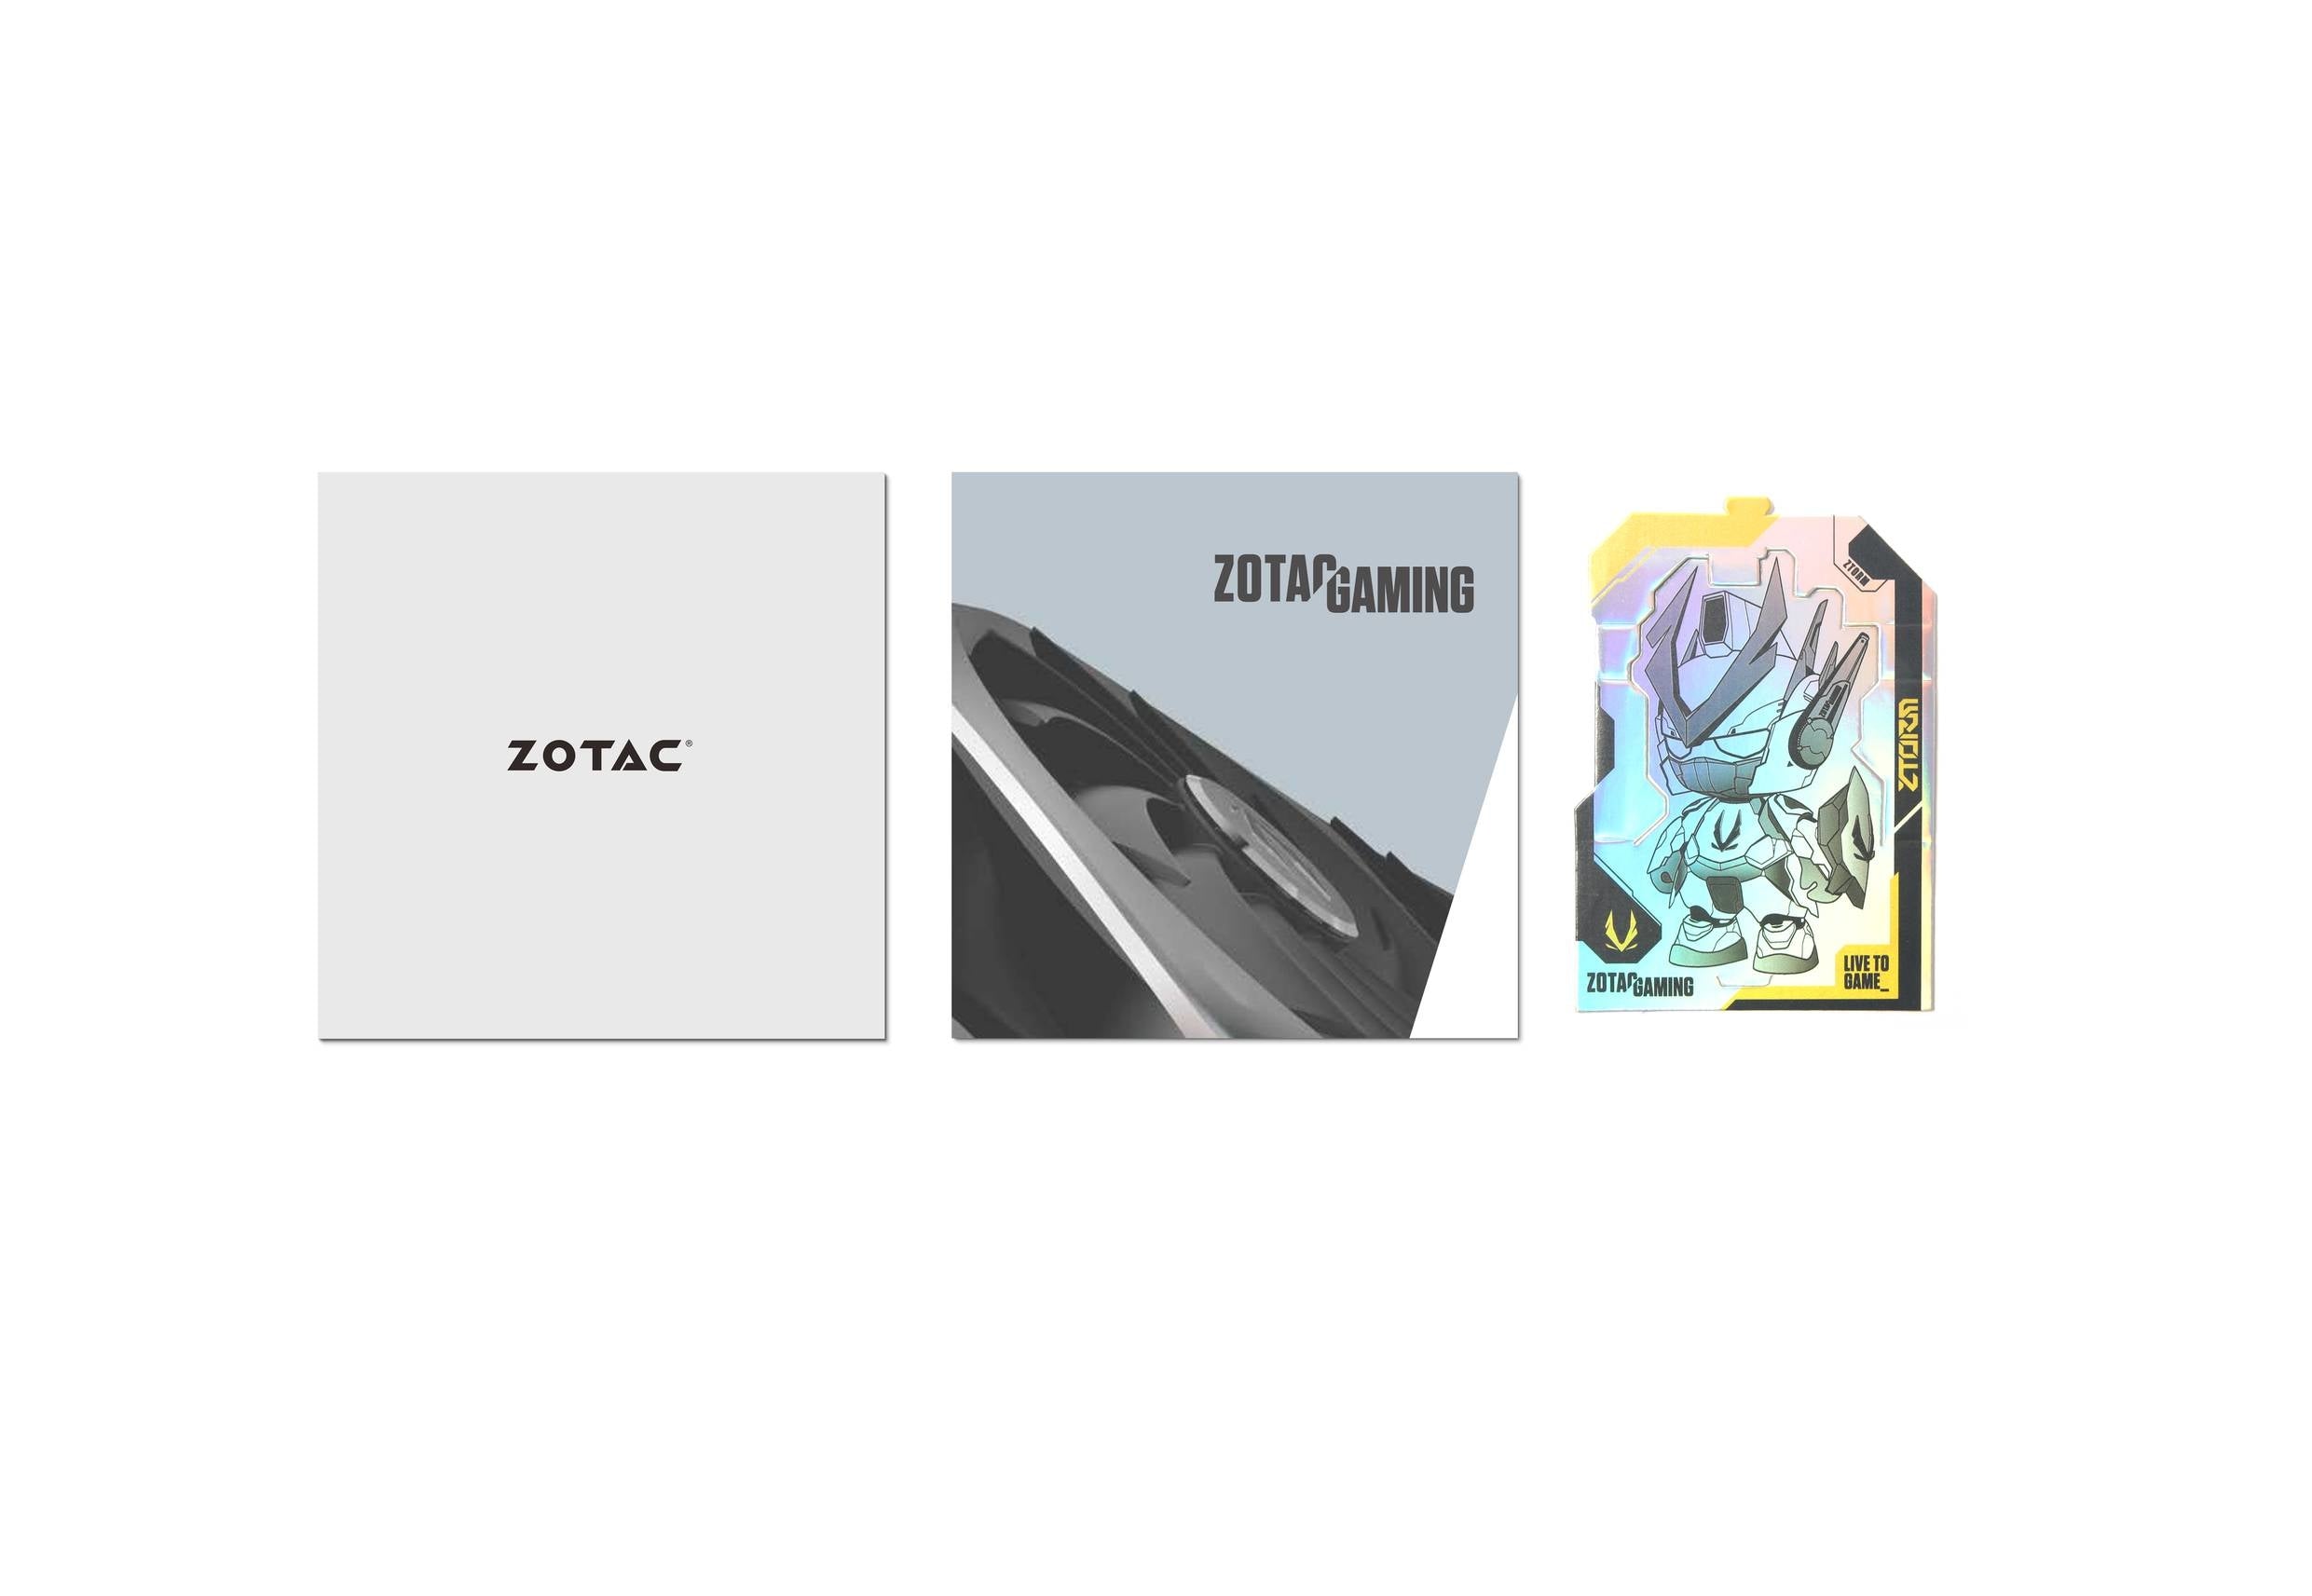 Tarjeta De Video Zotac Gaming Geforce Rtx 4060 Ti 8Gb Twin Edge Oc